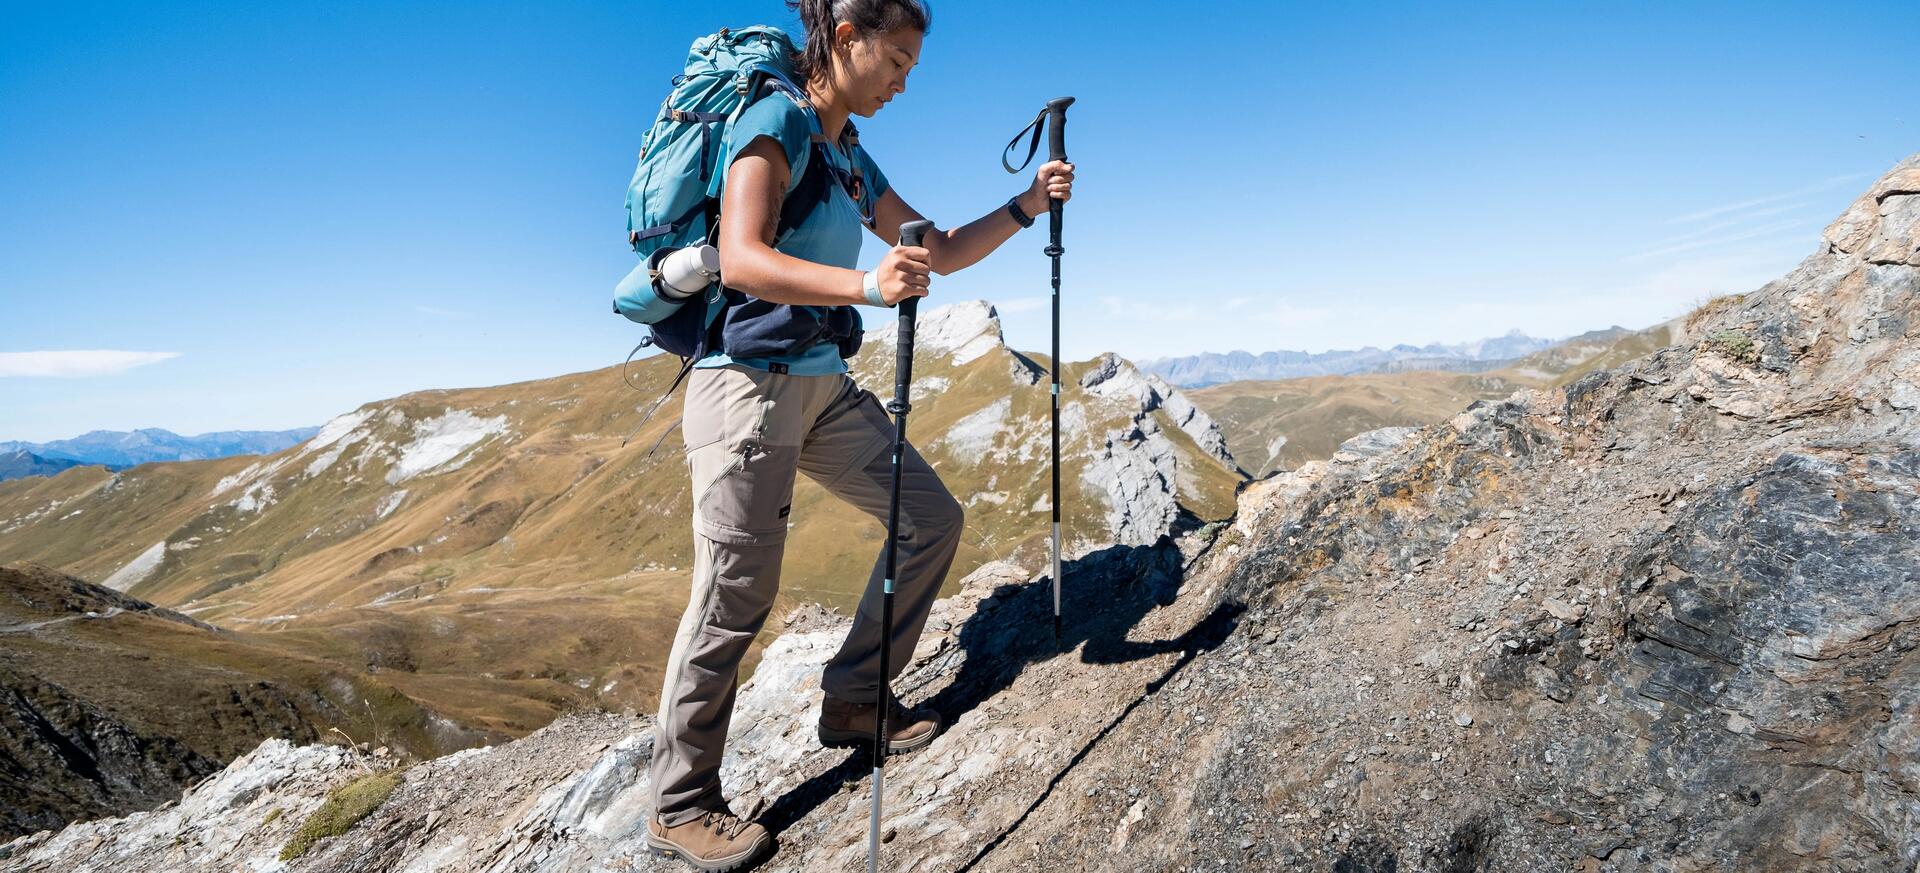 kobieta idąca po skale w butach trekkingowych z kijami trekkingowymi w rękach